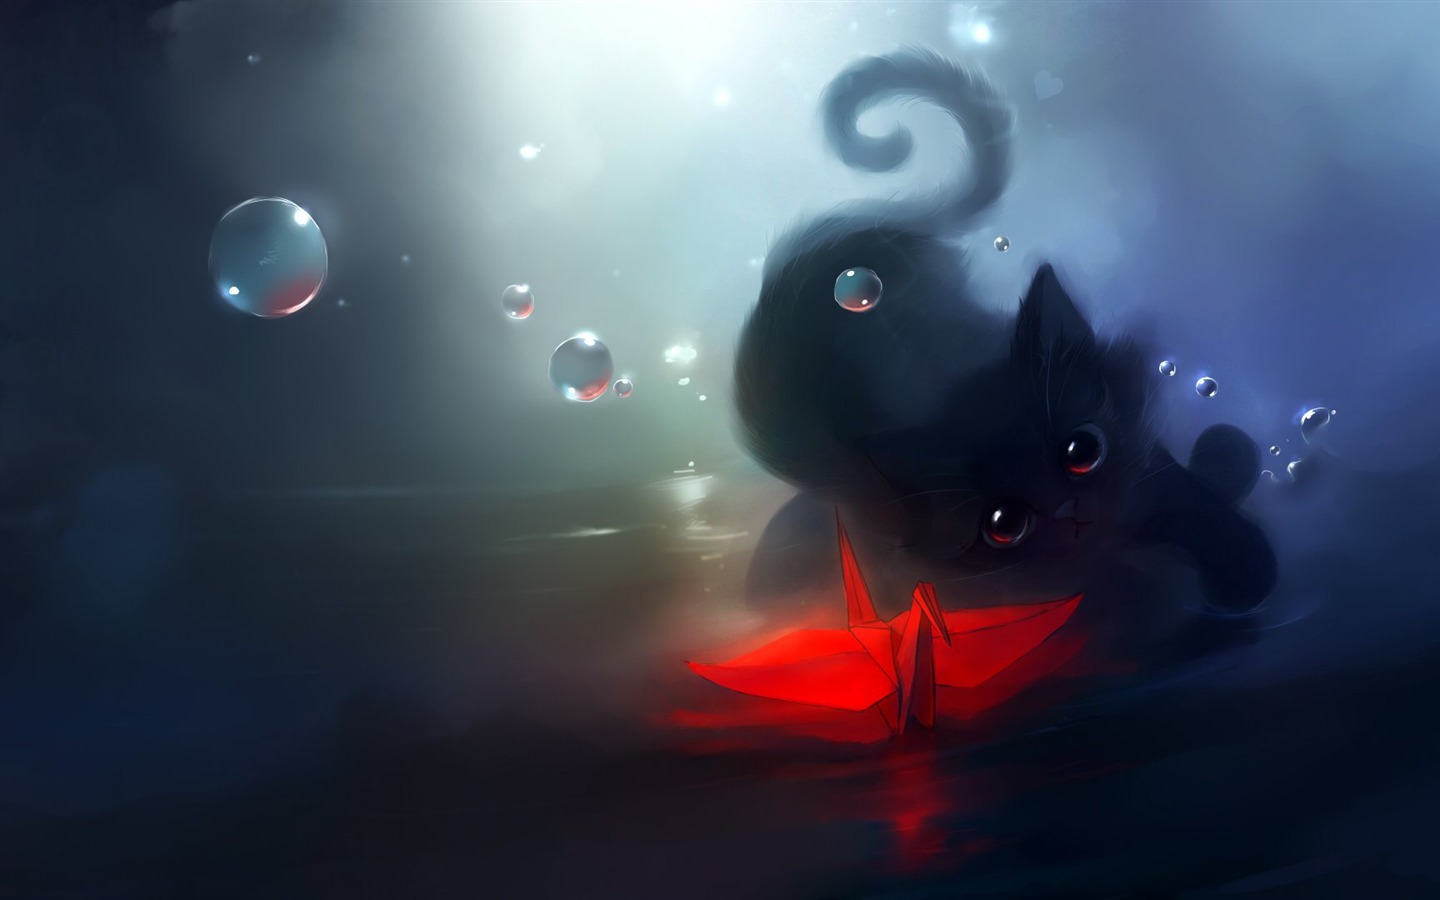 Apofiss pequeño gato negro papel pintado acuarelas #15 - 1440x900